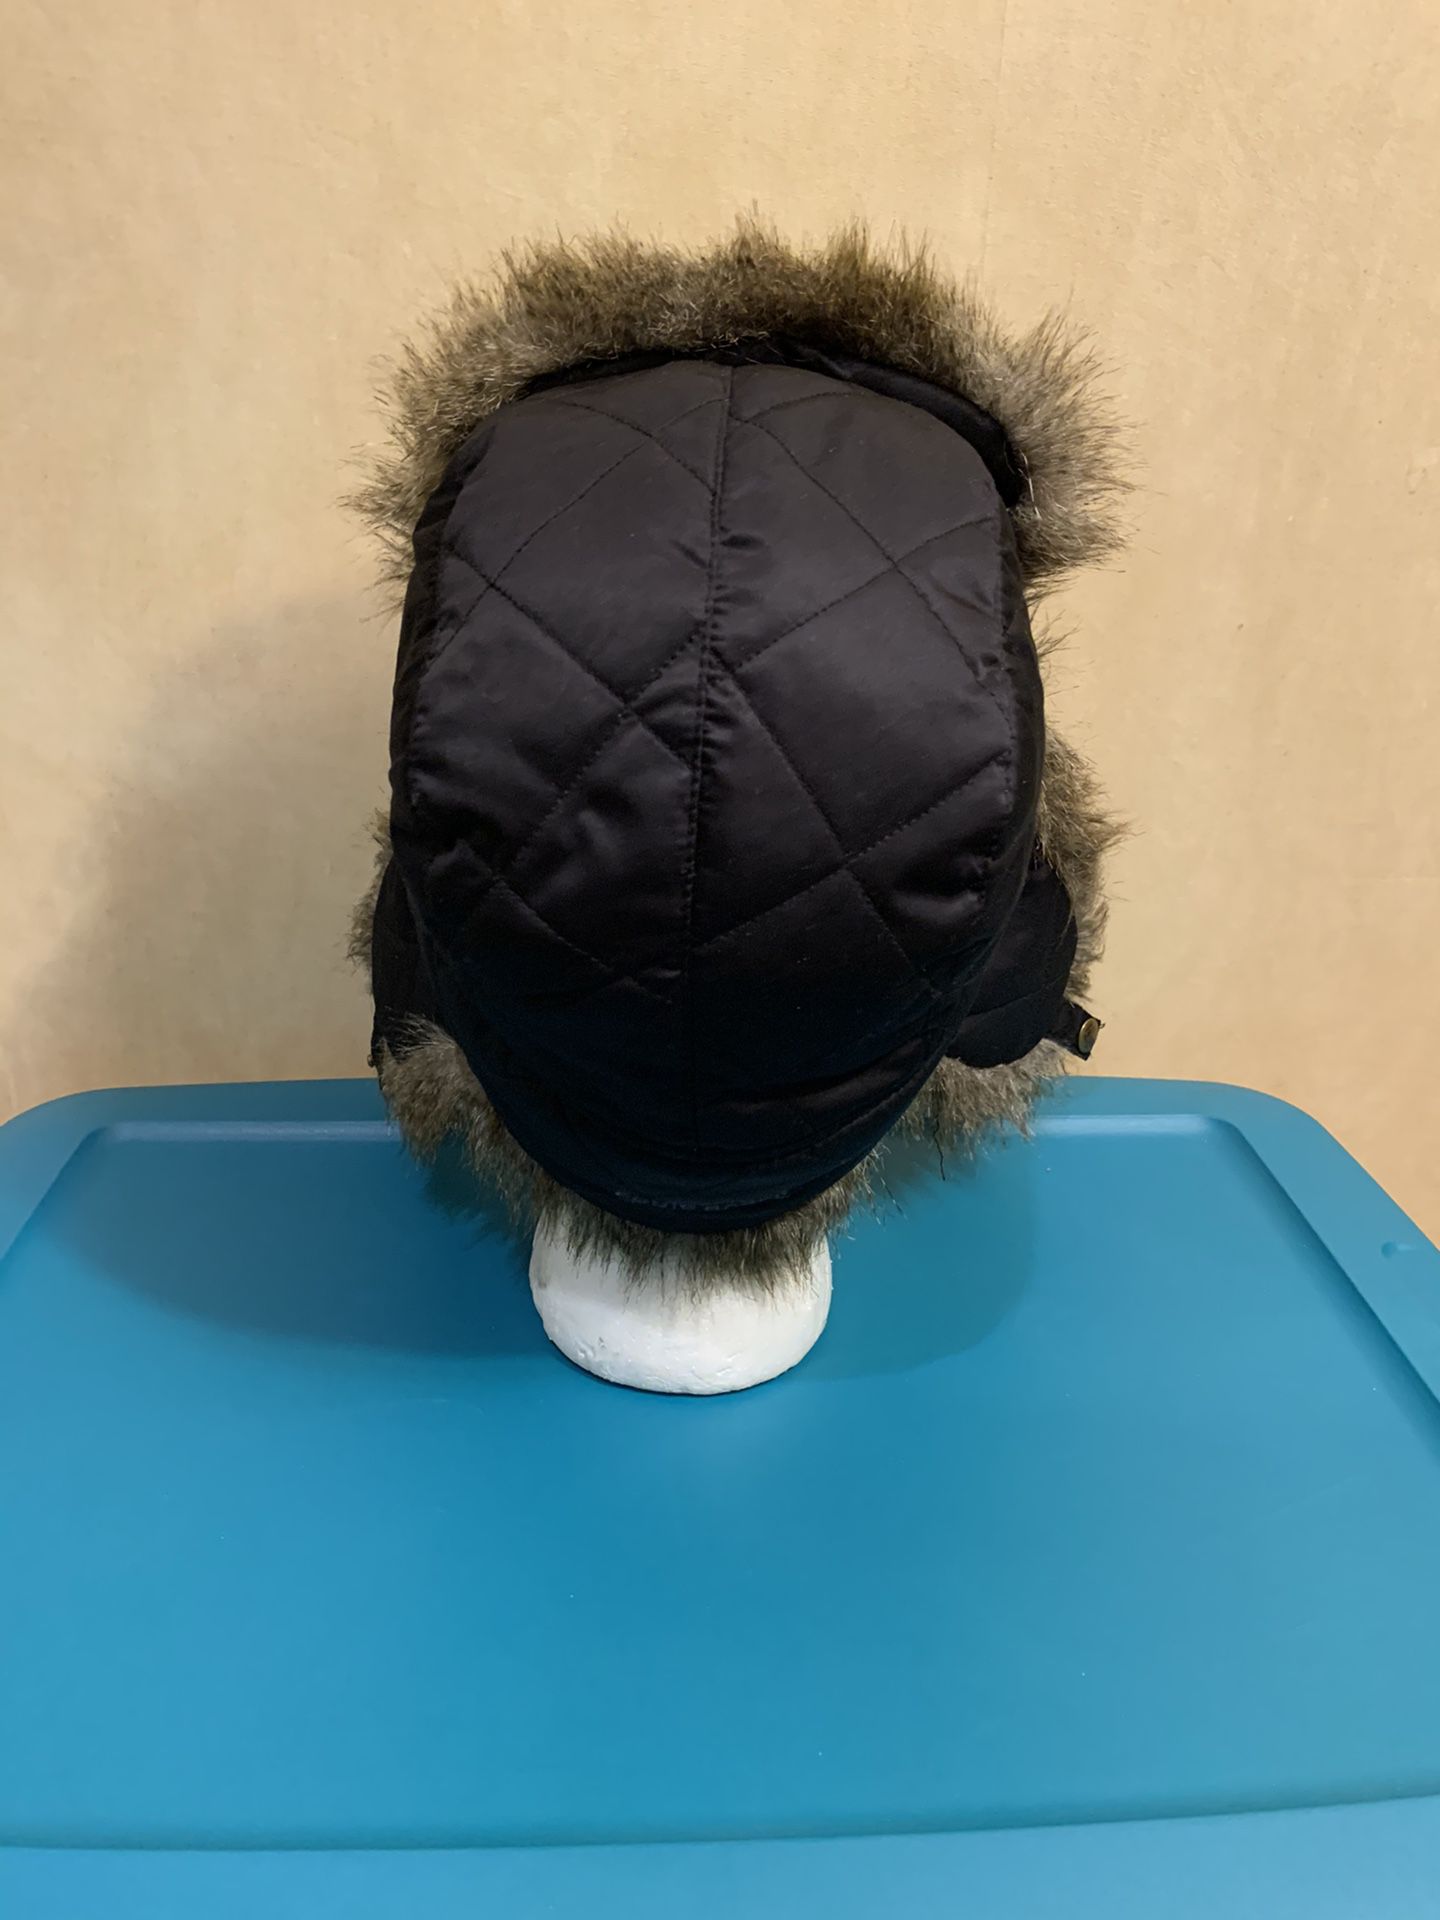 Eddie Bauer winter hat, size L/XL for Sale in Skokie, IL - OfferUp